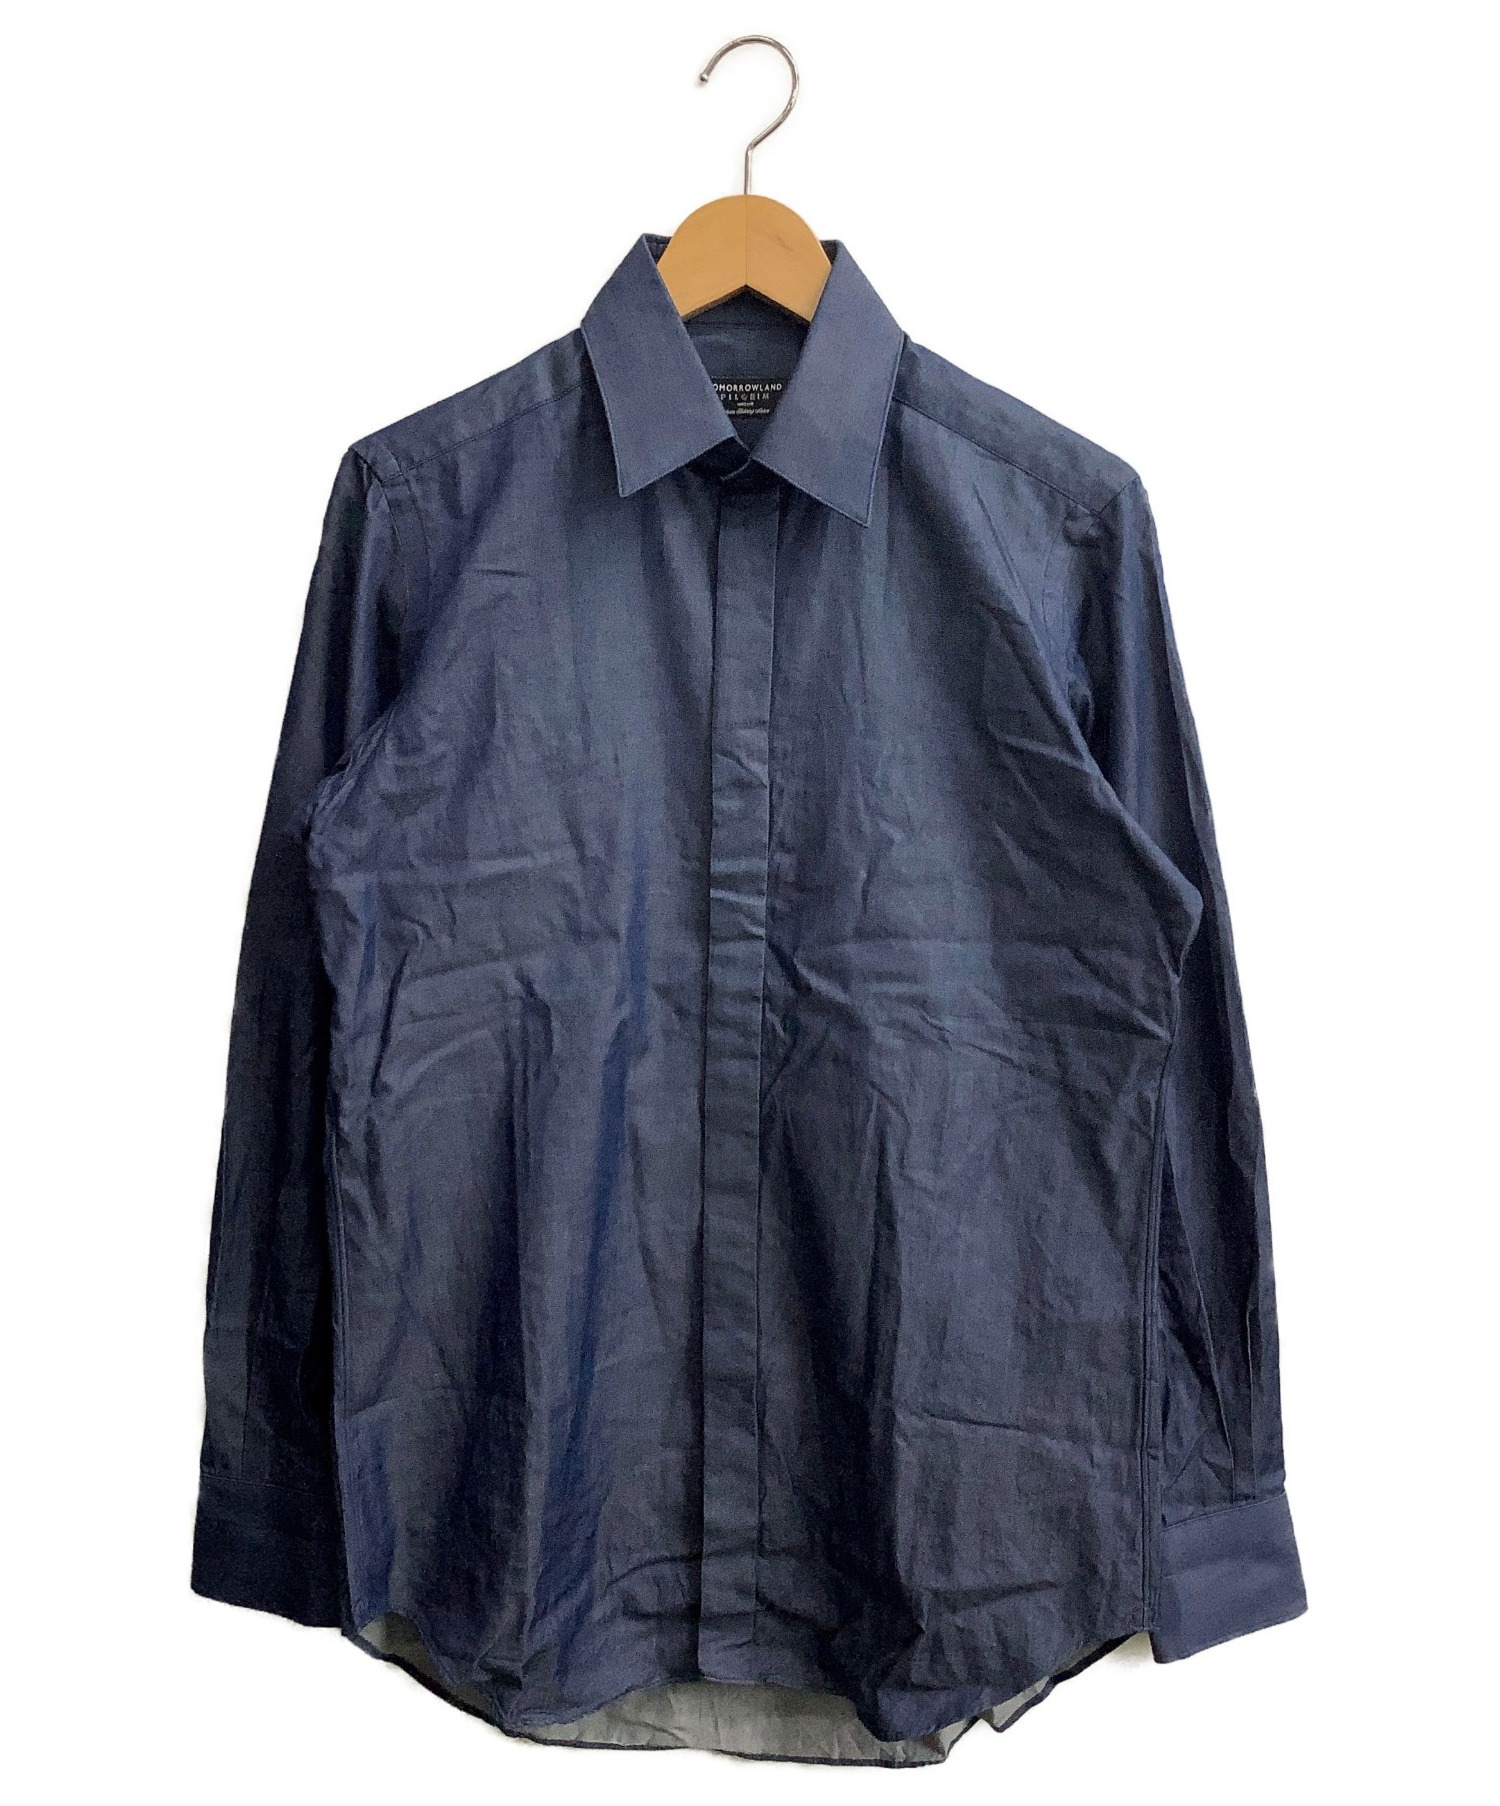 TOMORROW LAND PILGRIM (トゥモローランド ピルグリム) ツイルドレスシャツ インディゴ サイズ:Mサイズ(38)